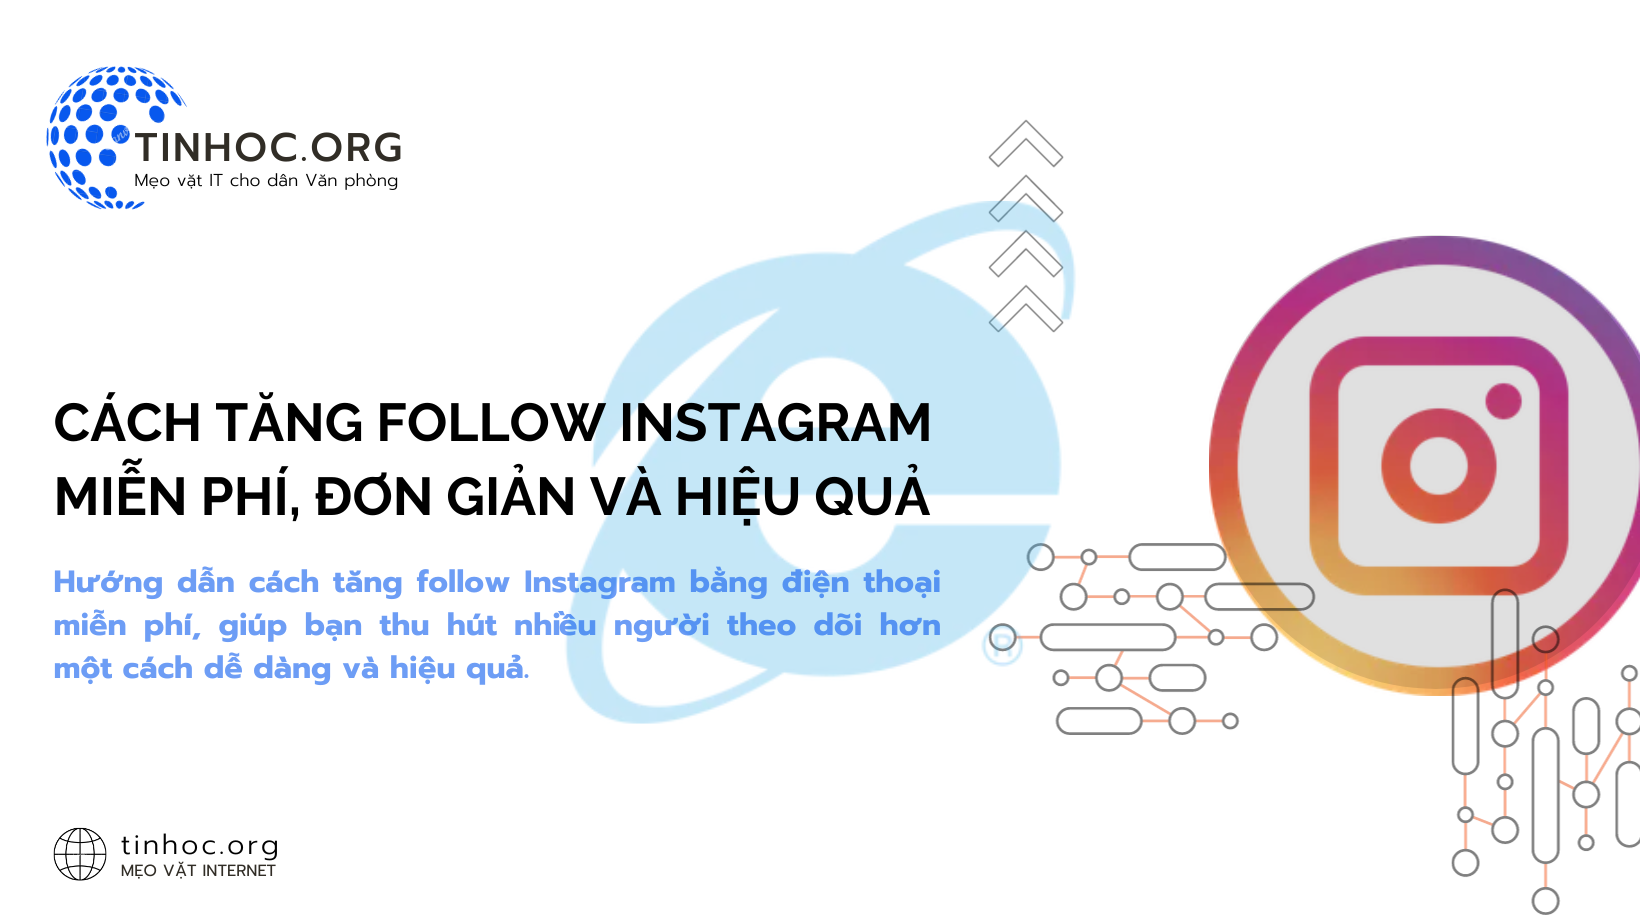 Cách tăng follow Instagram miễn phí, đơn giản và hiệu quả